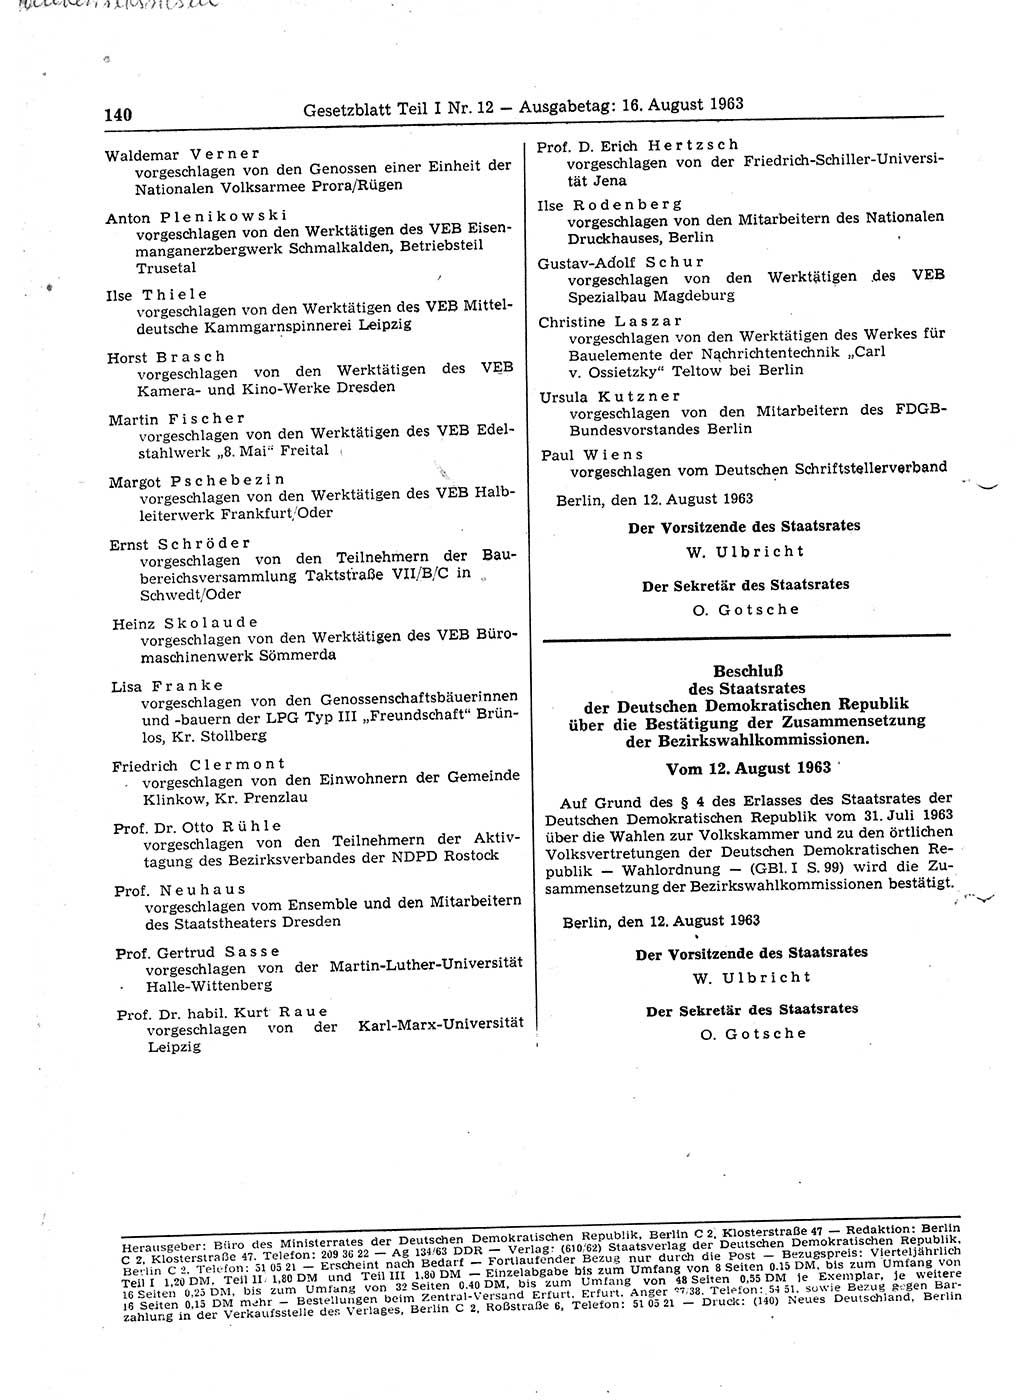 Gesetzblatt (GBl.) der Deutschen Demokratischen Republik (DDR) Teil Ⅰ 1963, Seite 140 (GBl. DDR Ⅰ 1963, S. 140)